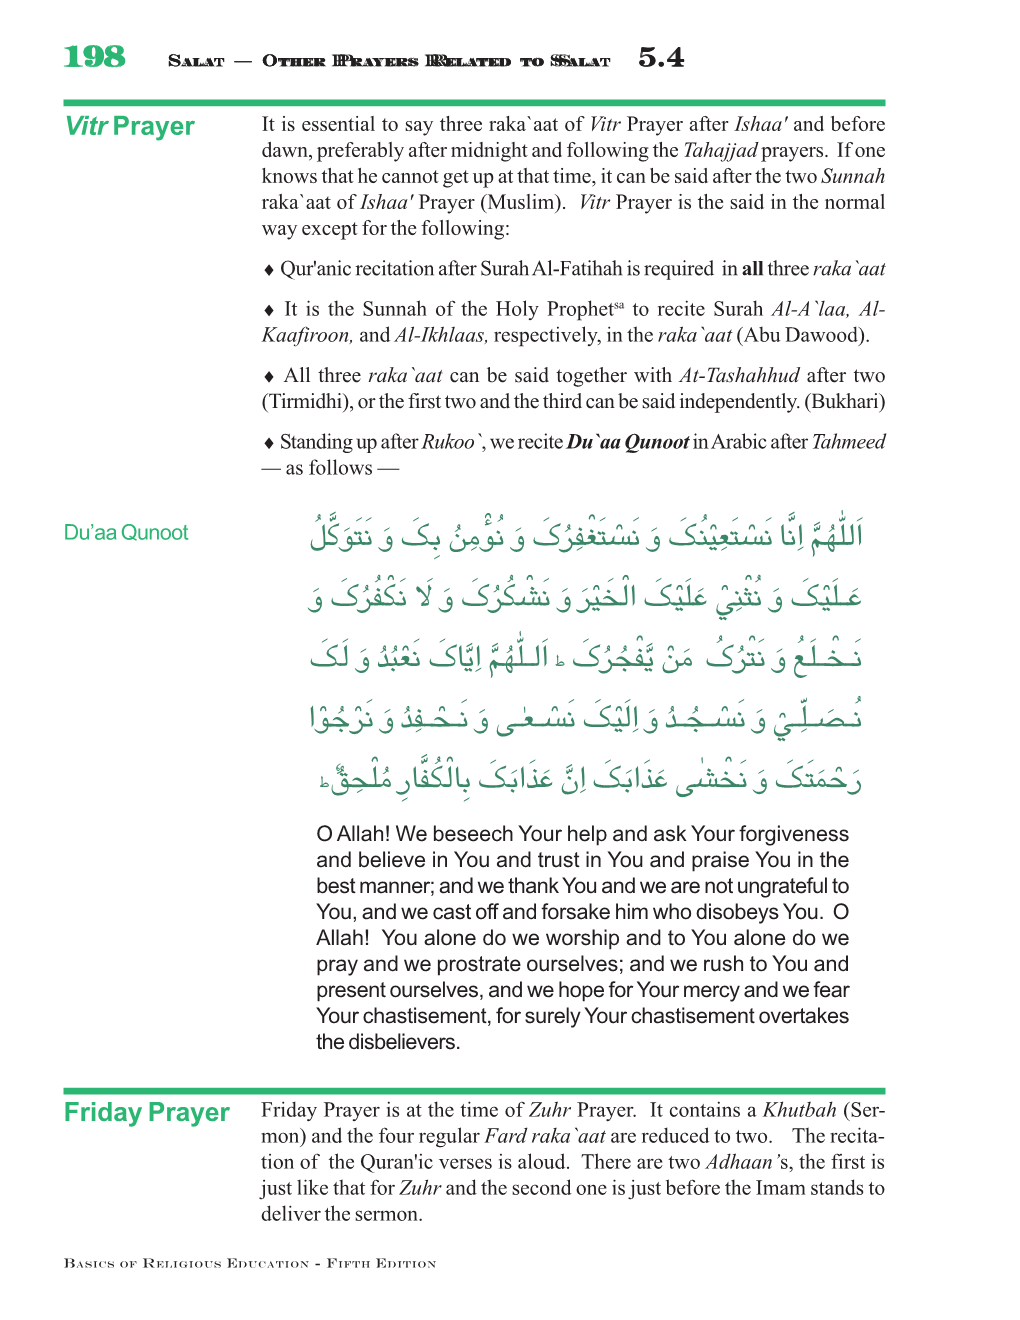 Friday Prayer (Khutbah Thaania)